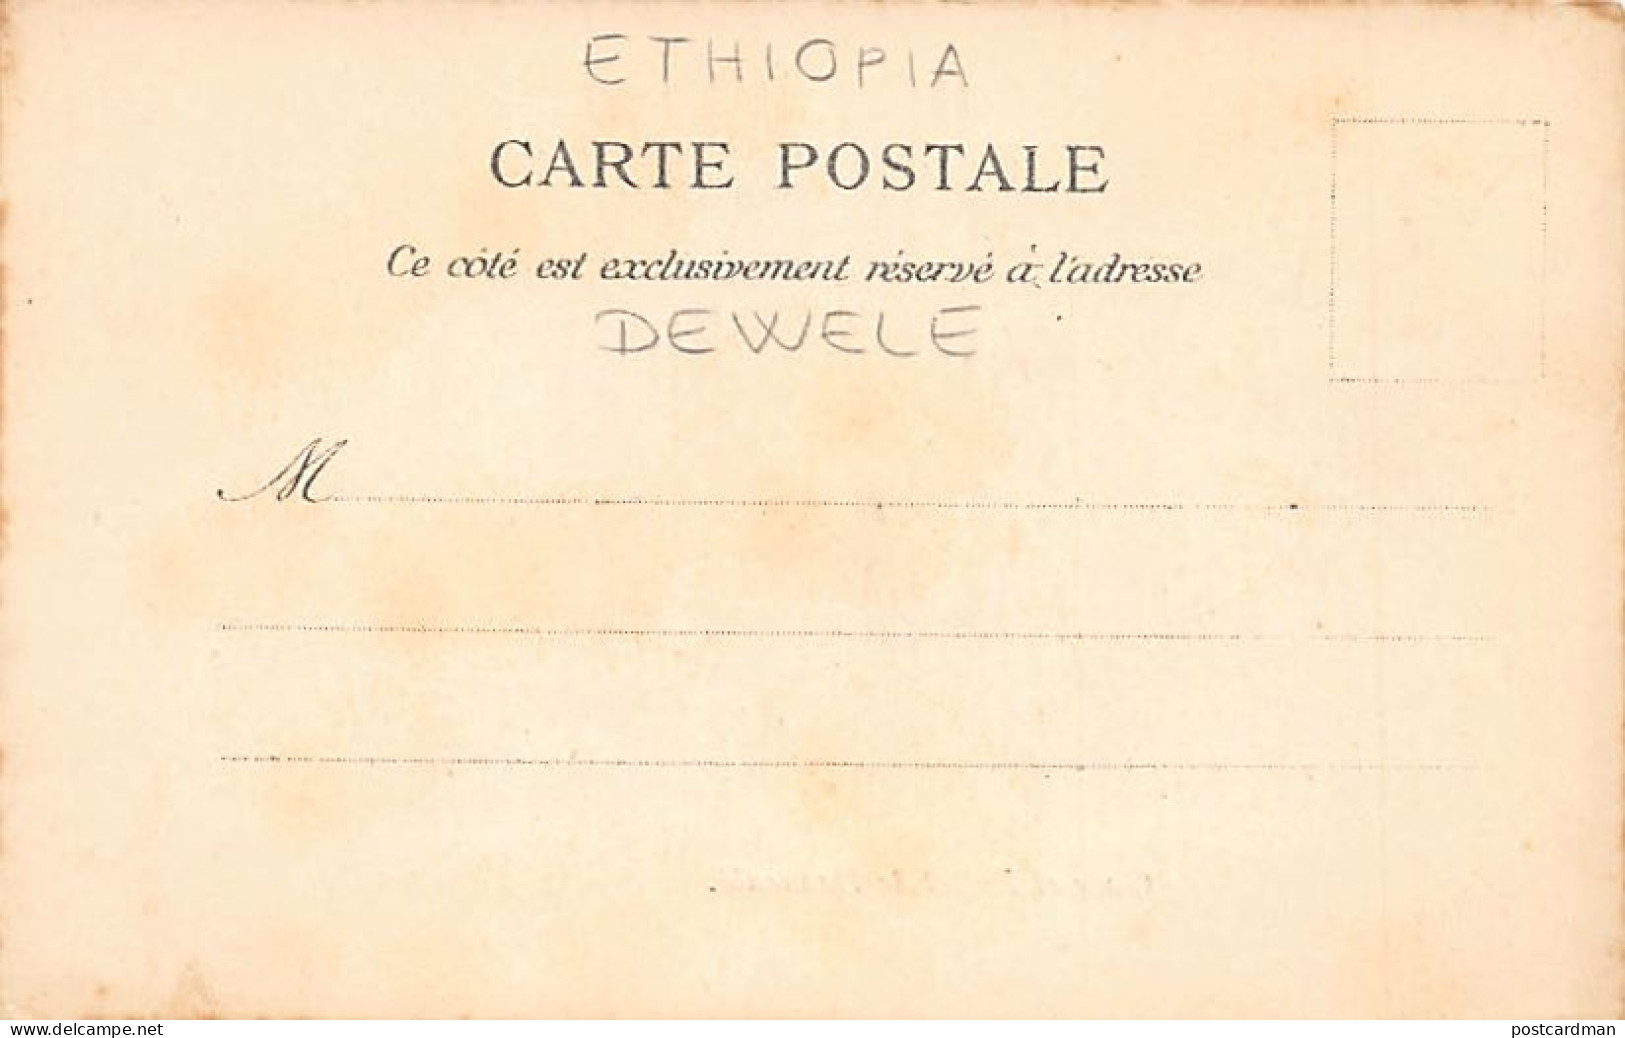 Ethiopia - DEWELE Daouenlé - The Station Of The Franco-Ethiopian Railroad - Publ. Unknown  - Äthiopien